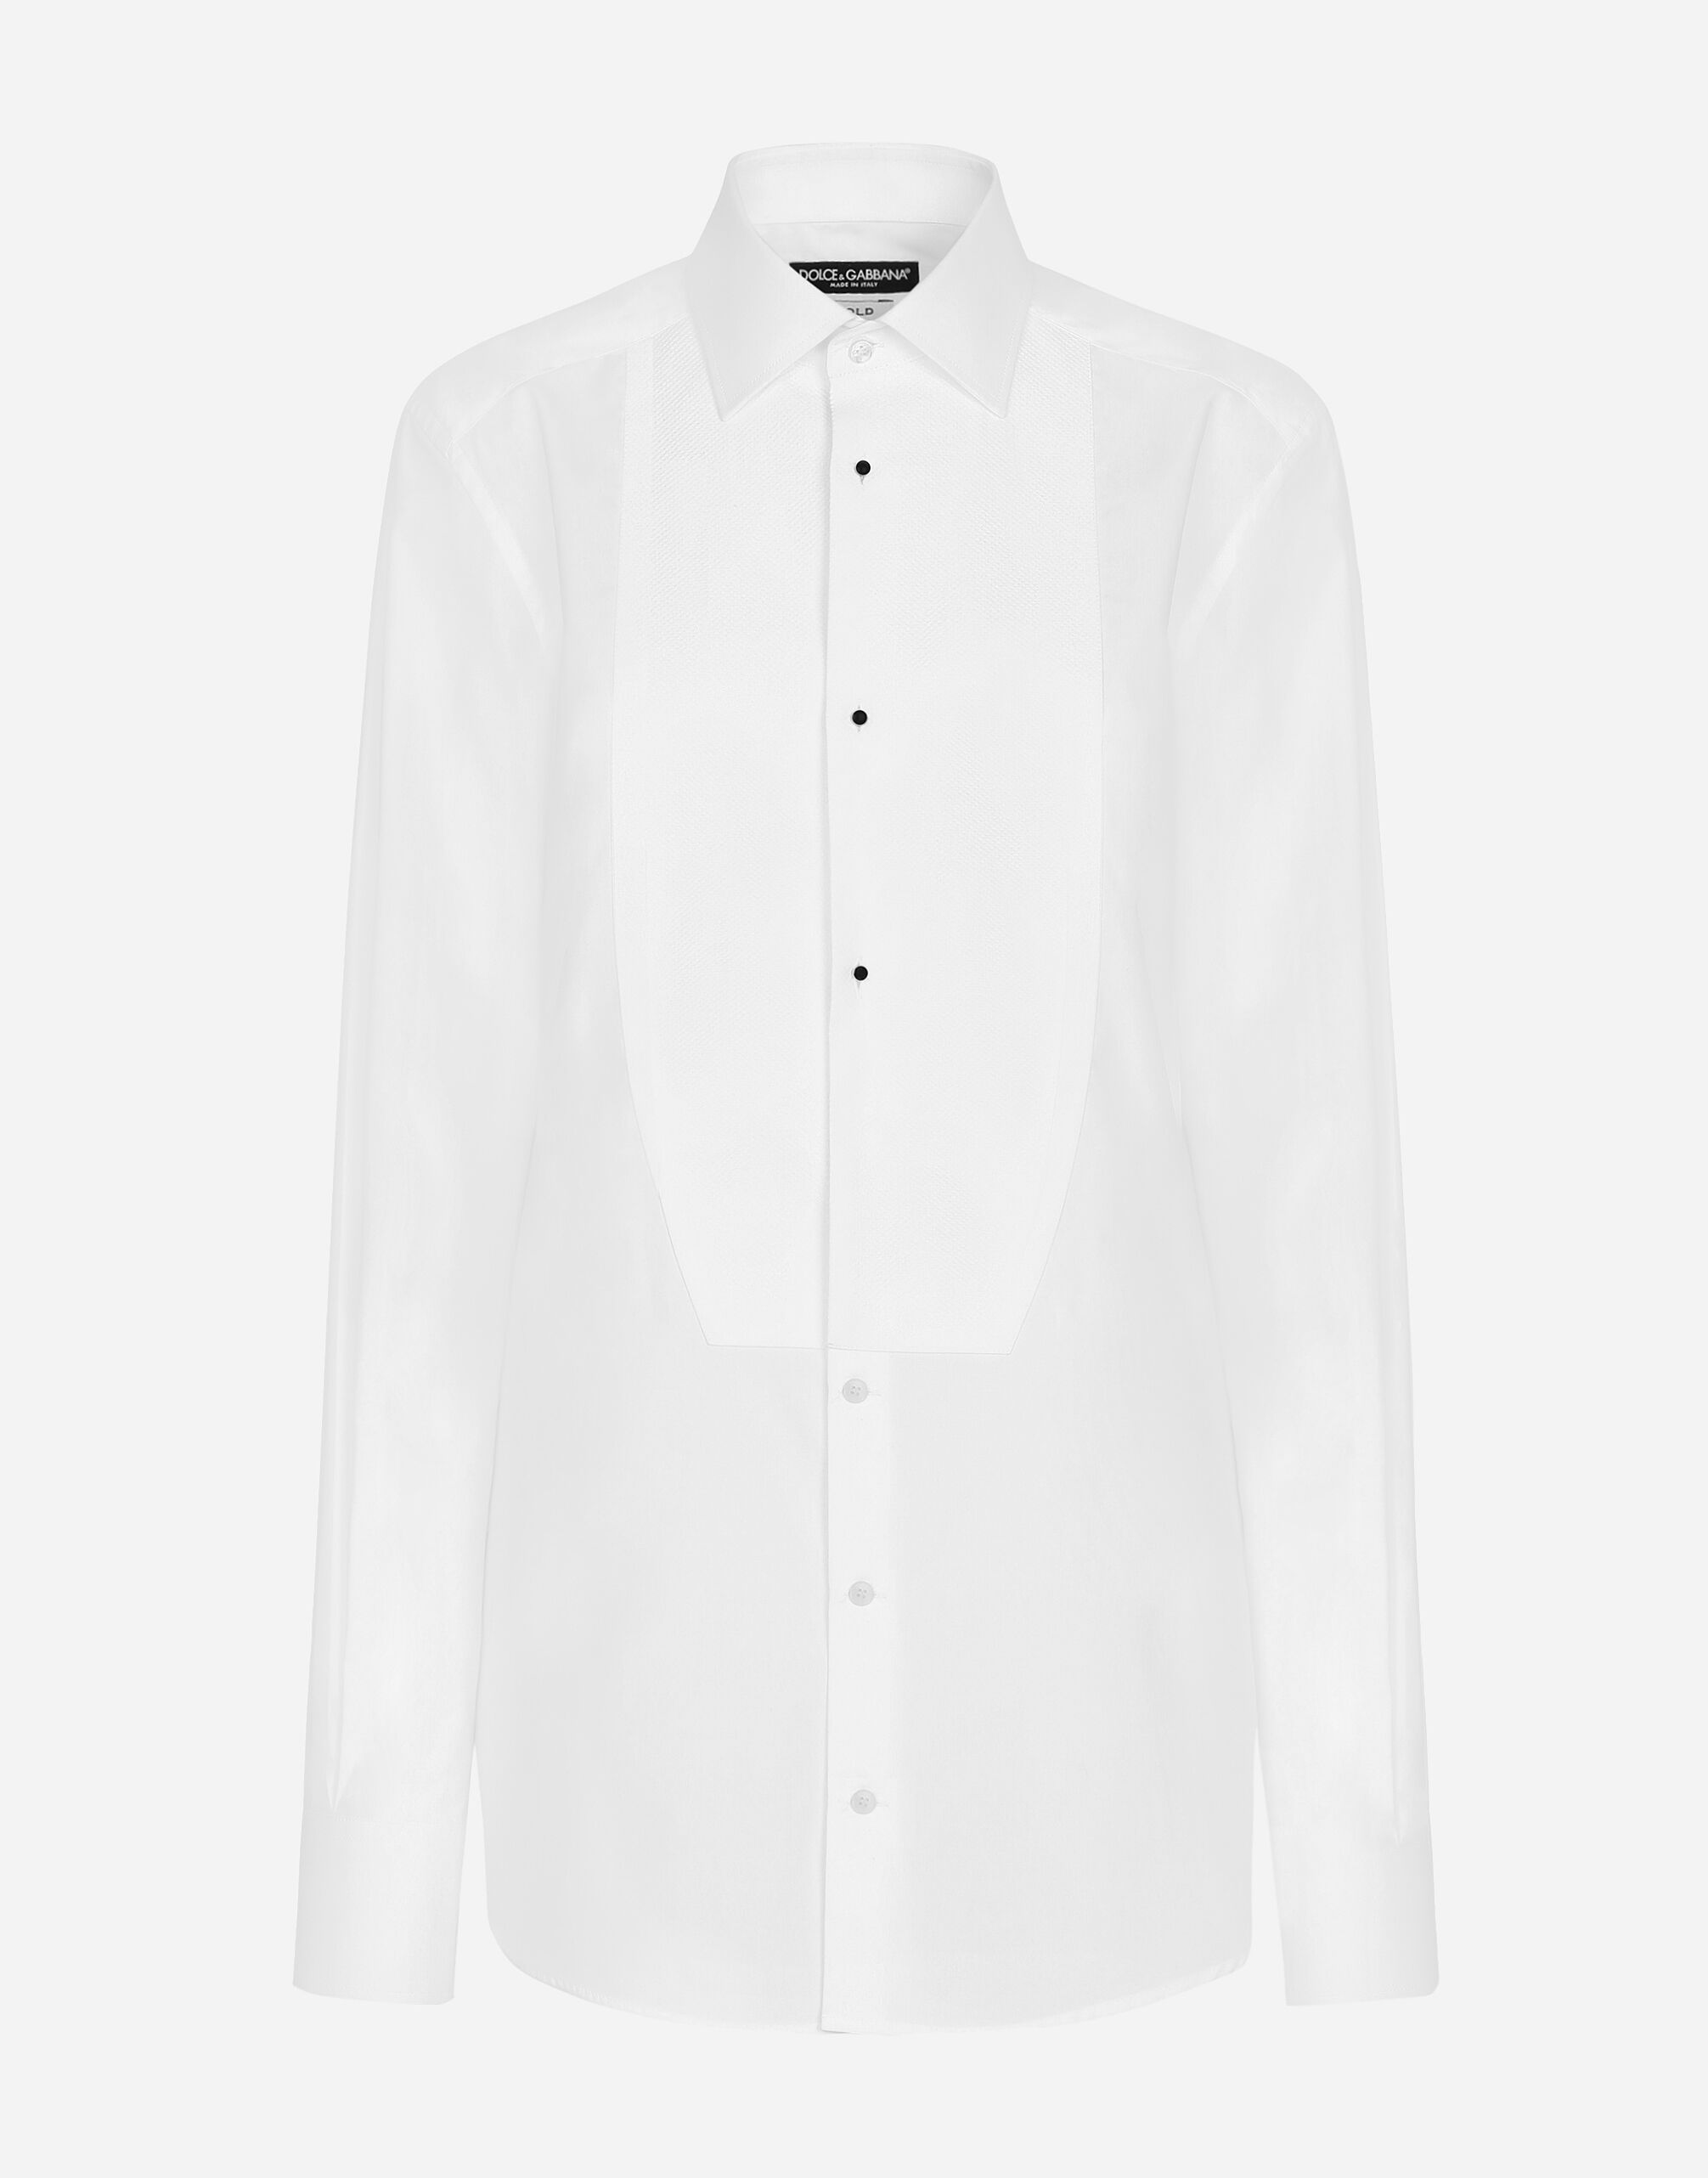 Dolce & Gabbana 피케 플래스트런 디테일 코튼 턱시도 셔츠 인쇄 F6JGHTHS10S